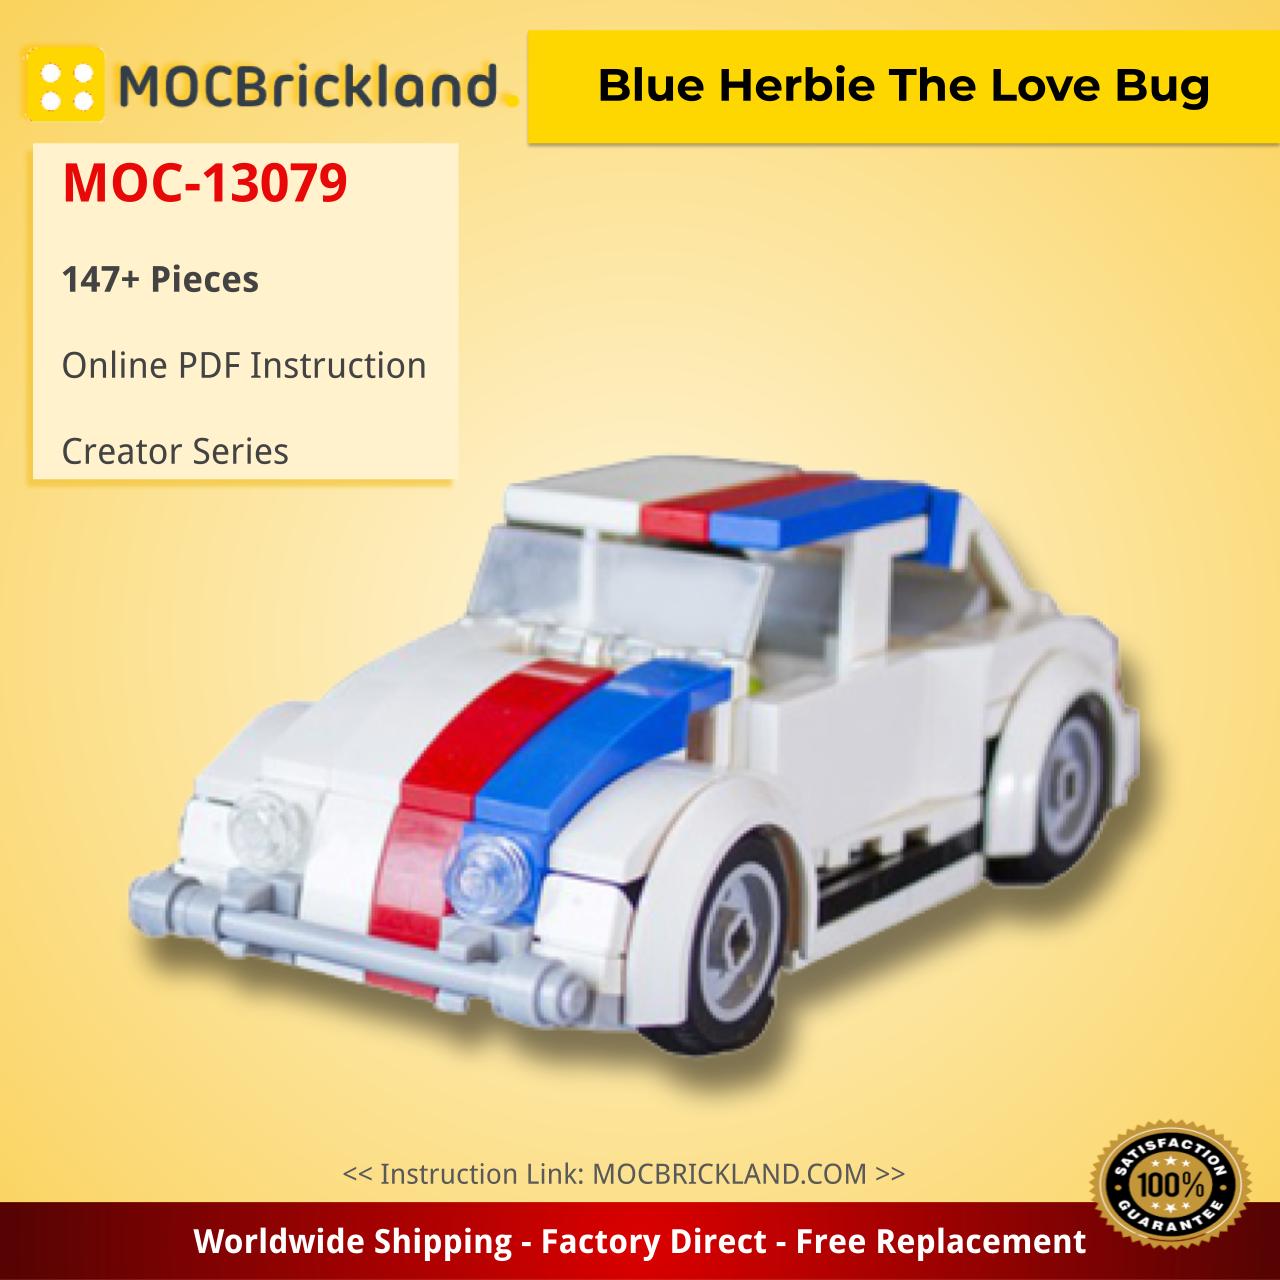 MOCBRICKLAND MOC-13079 Blue Herbie The Love Bug